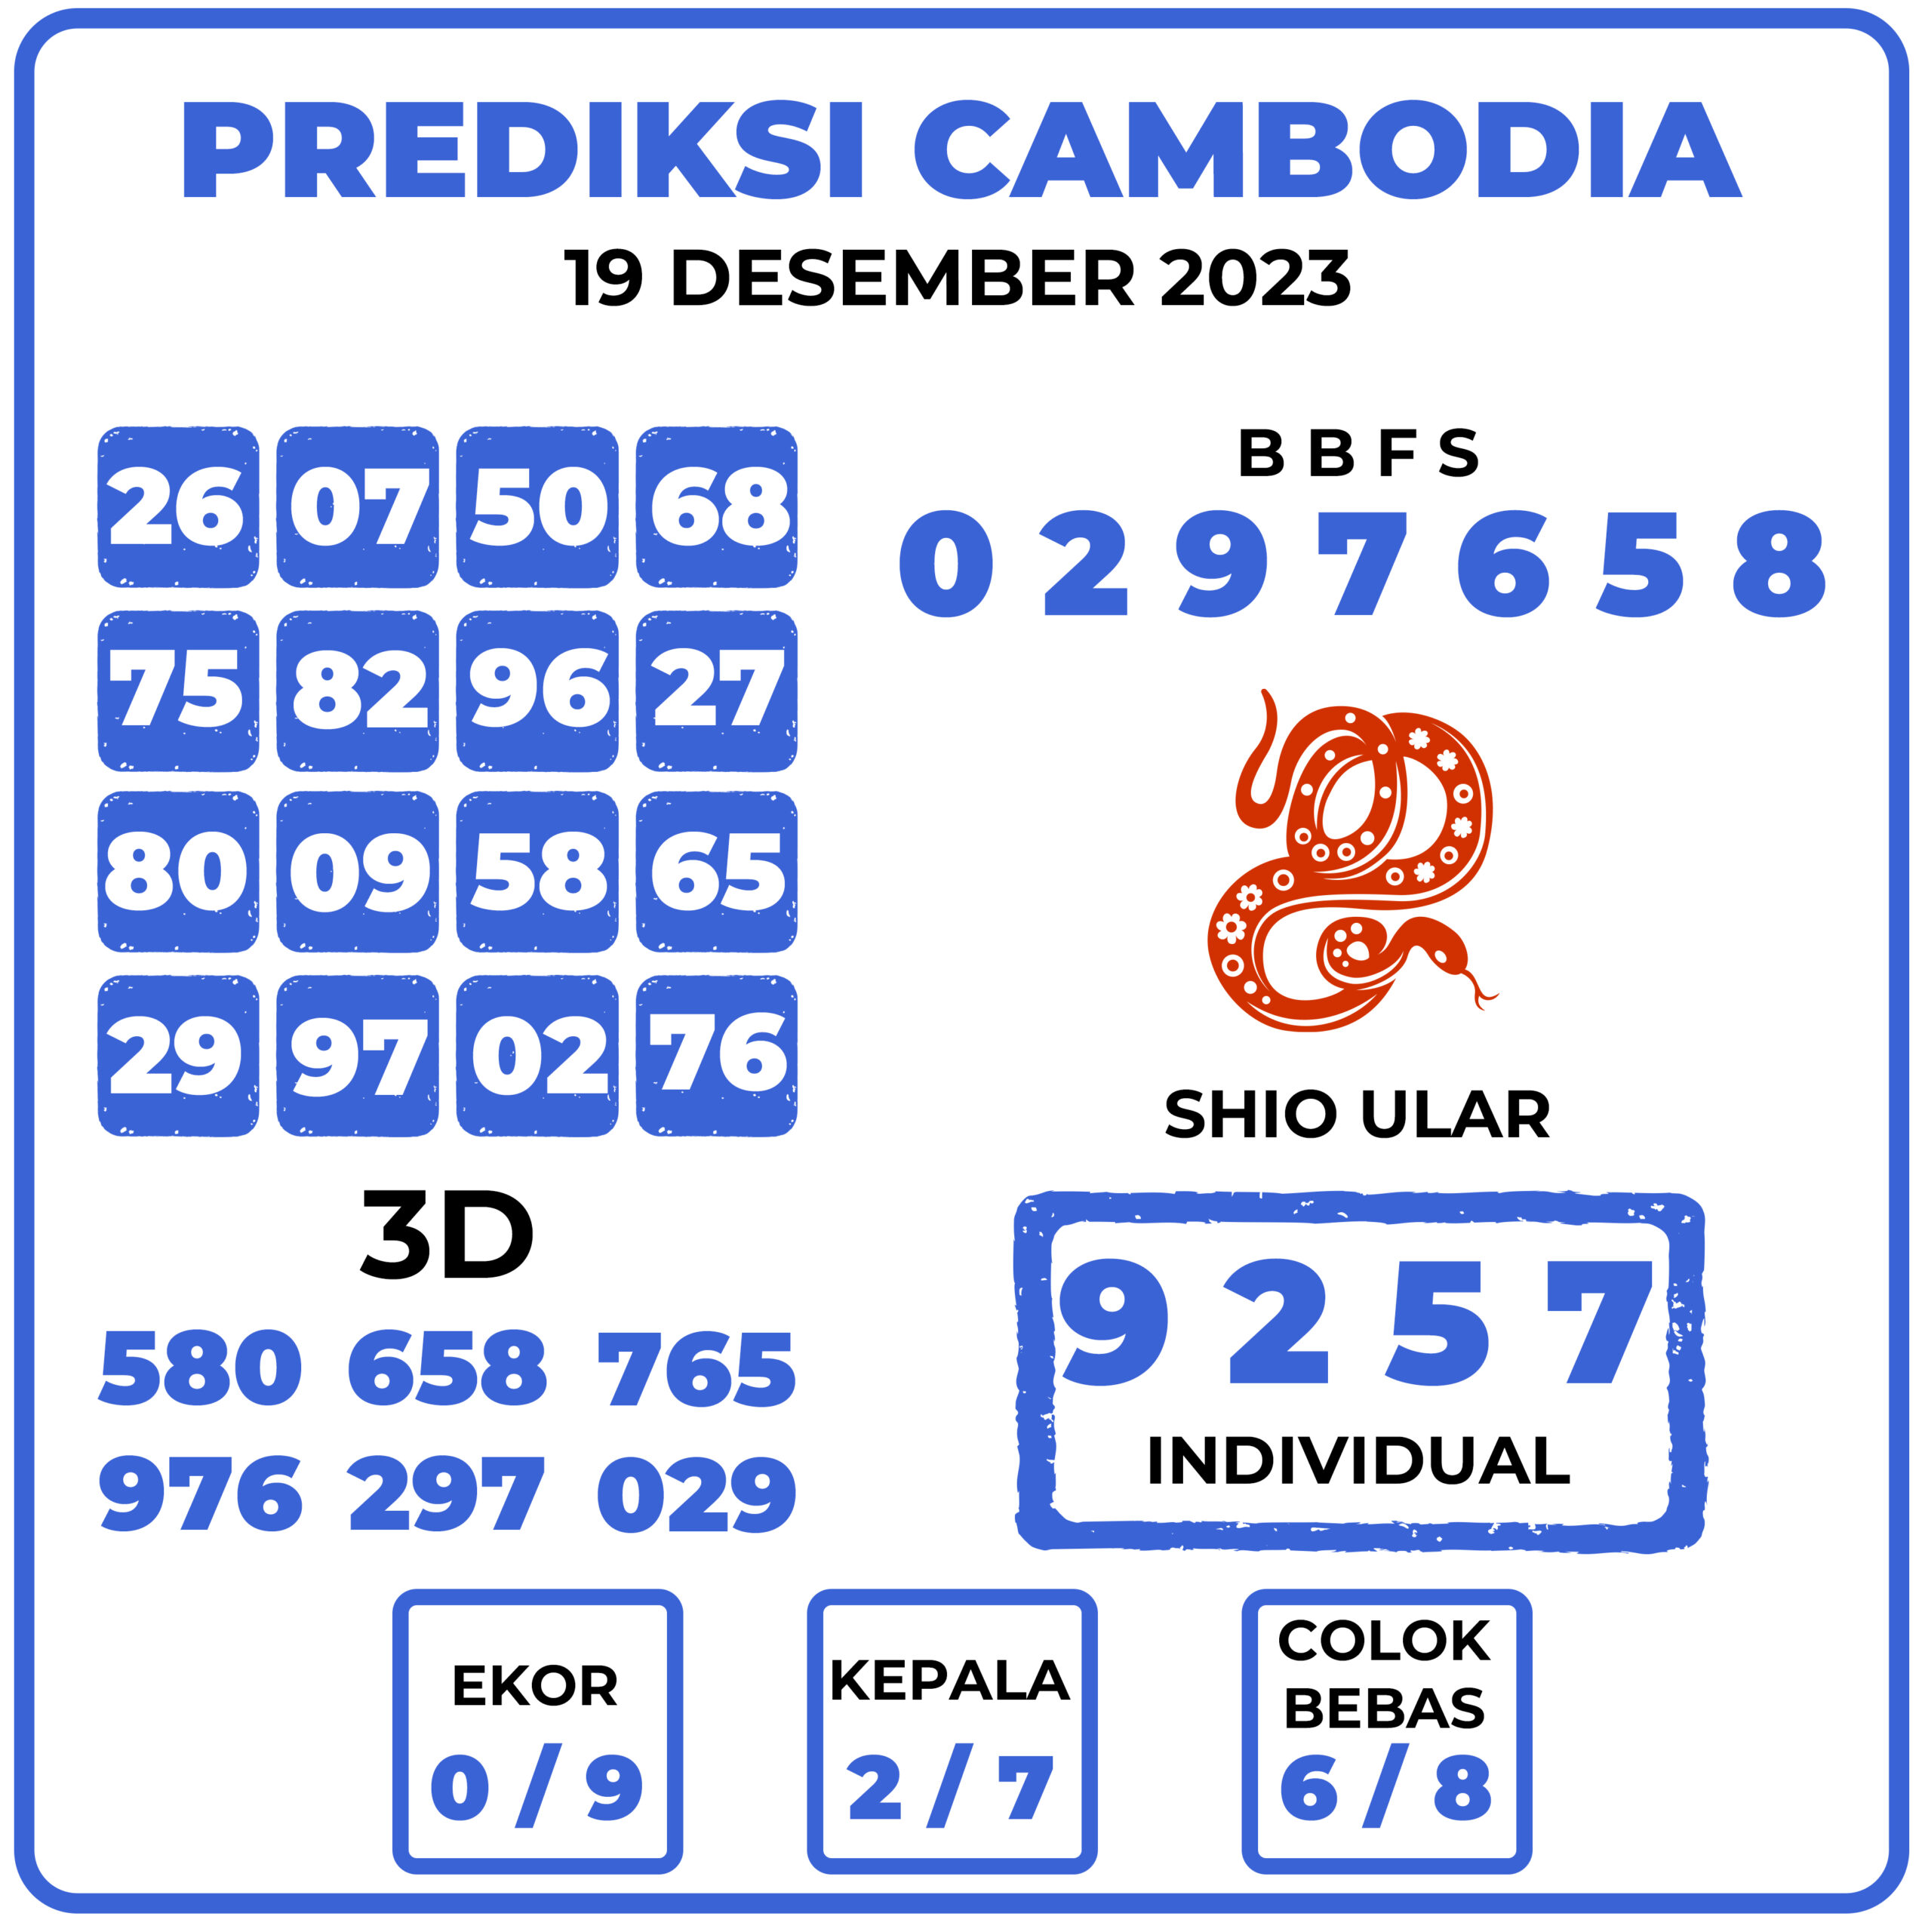 Prediksi Togel Cambodia 19 Desember 2023